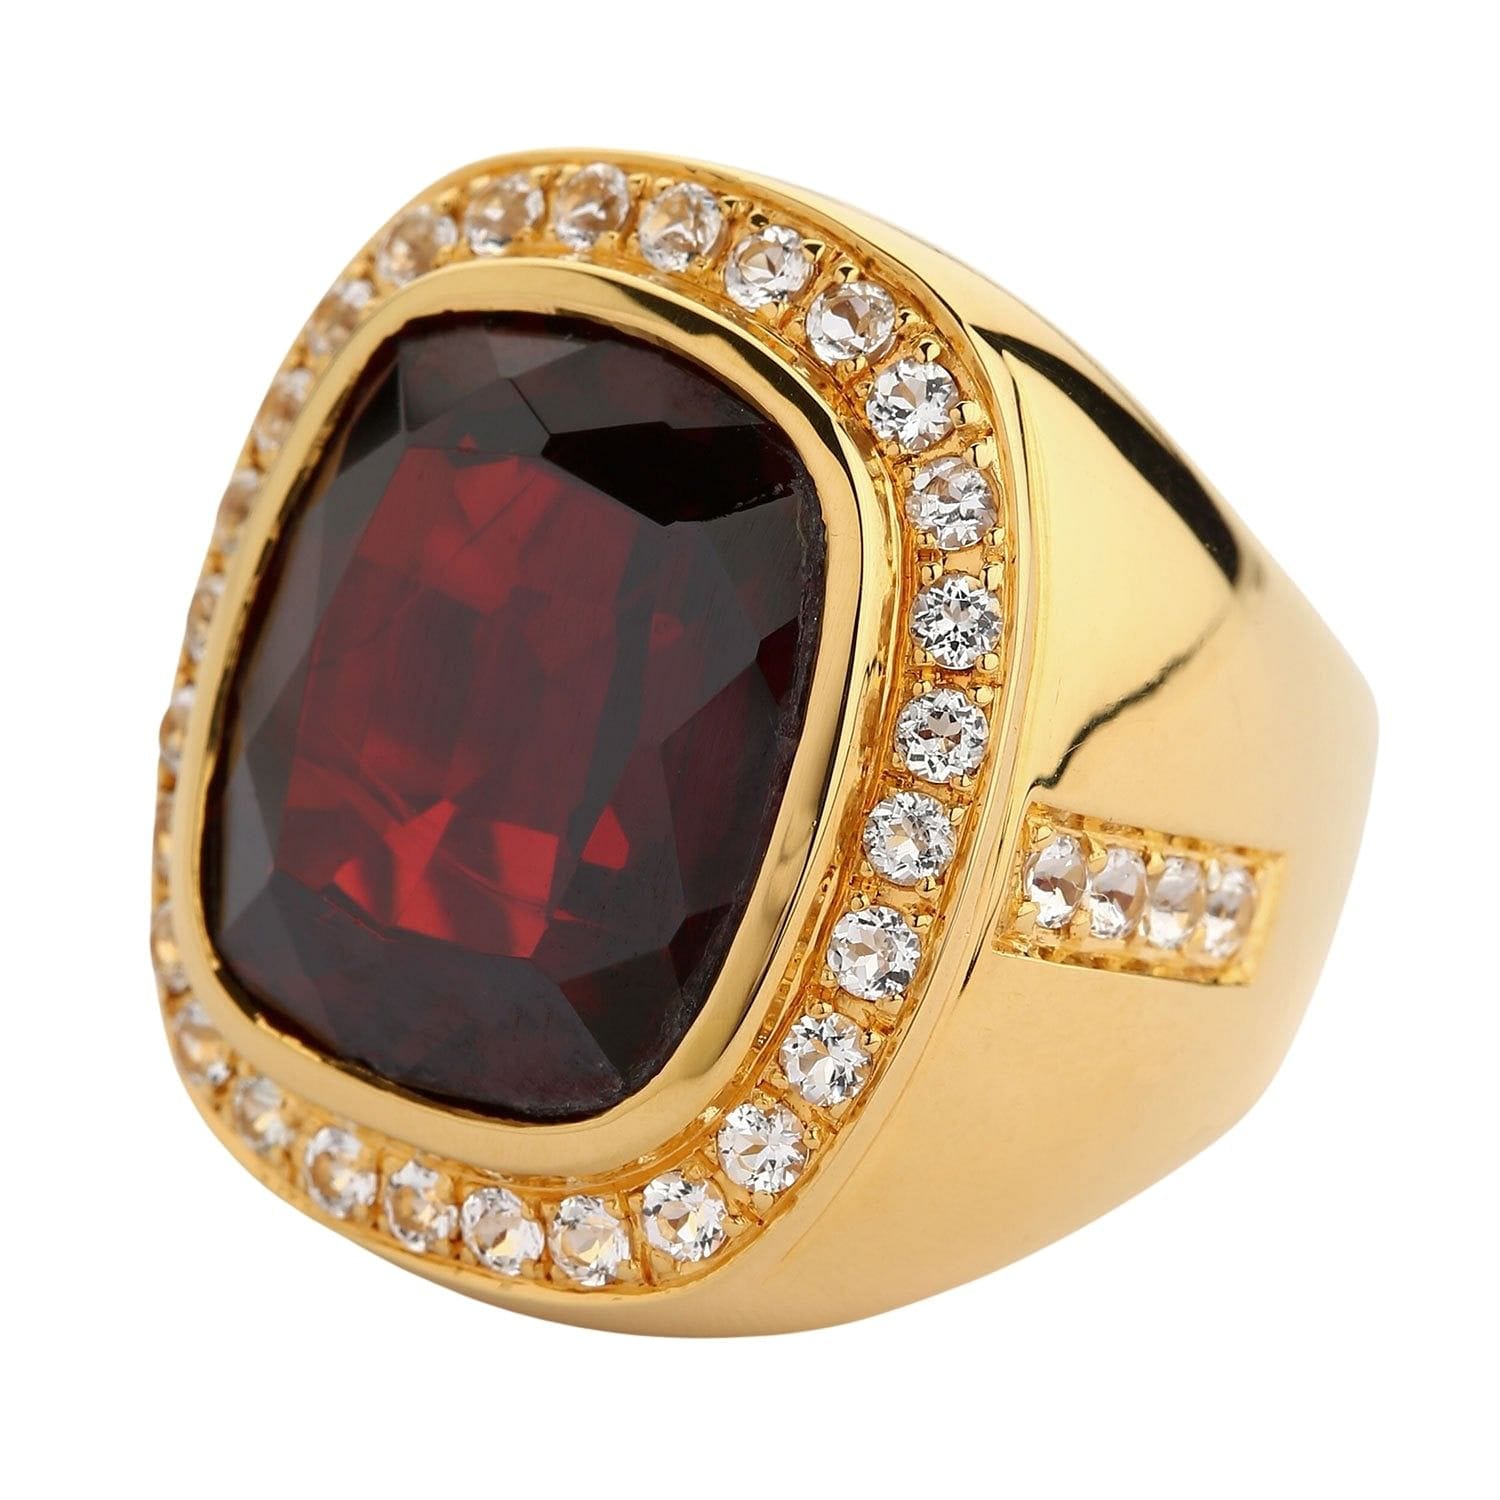 Buy 22K Plain Gold Fancy Men Ring 93VR4296 Online from Vaibhav Jewellers